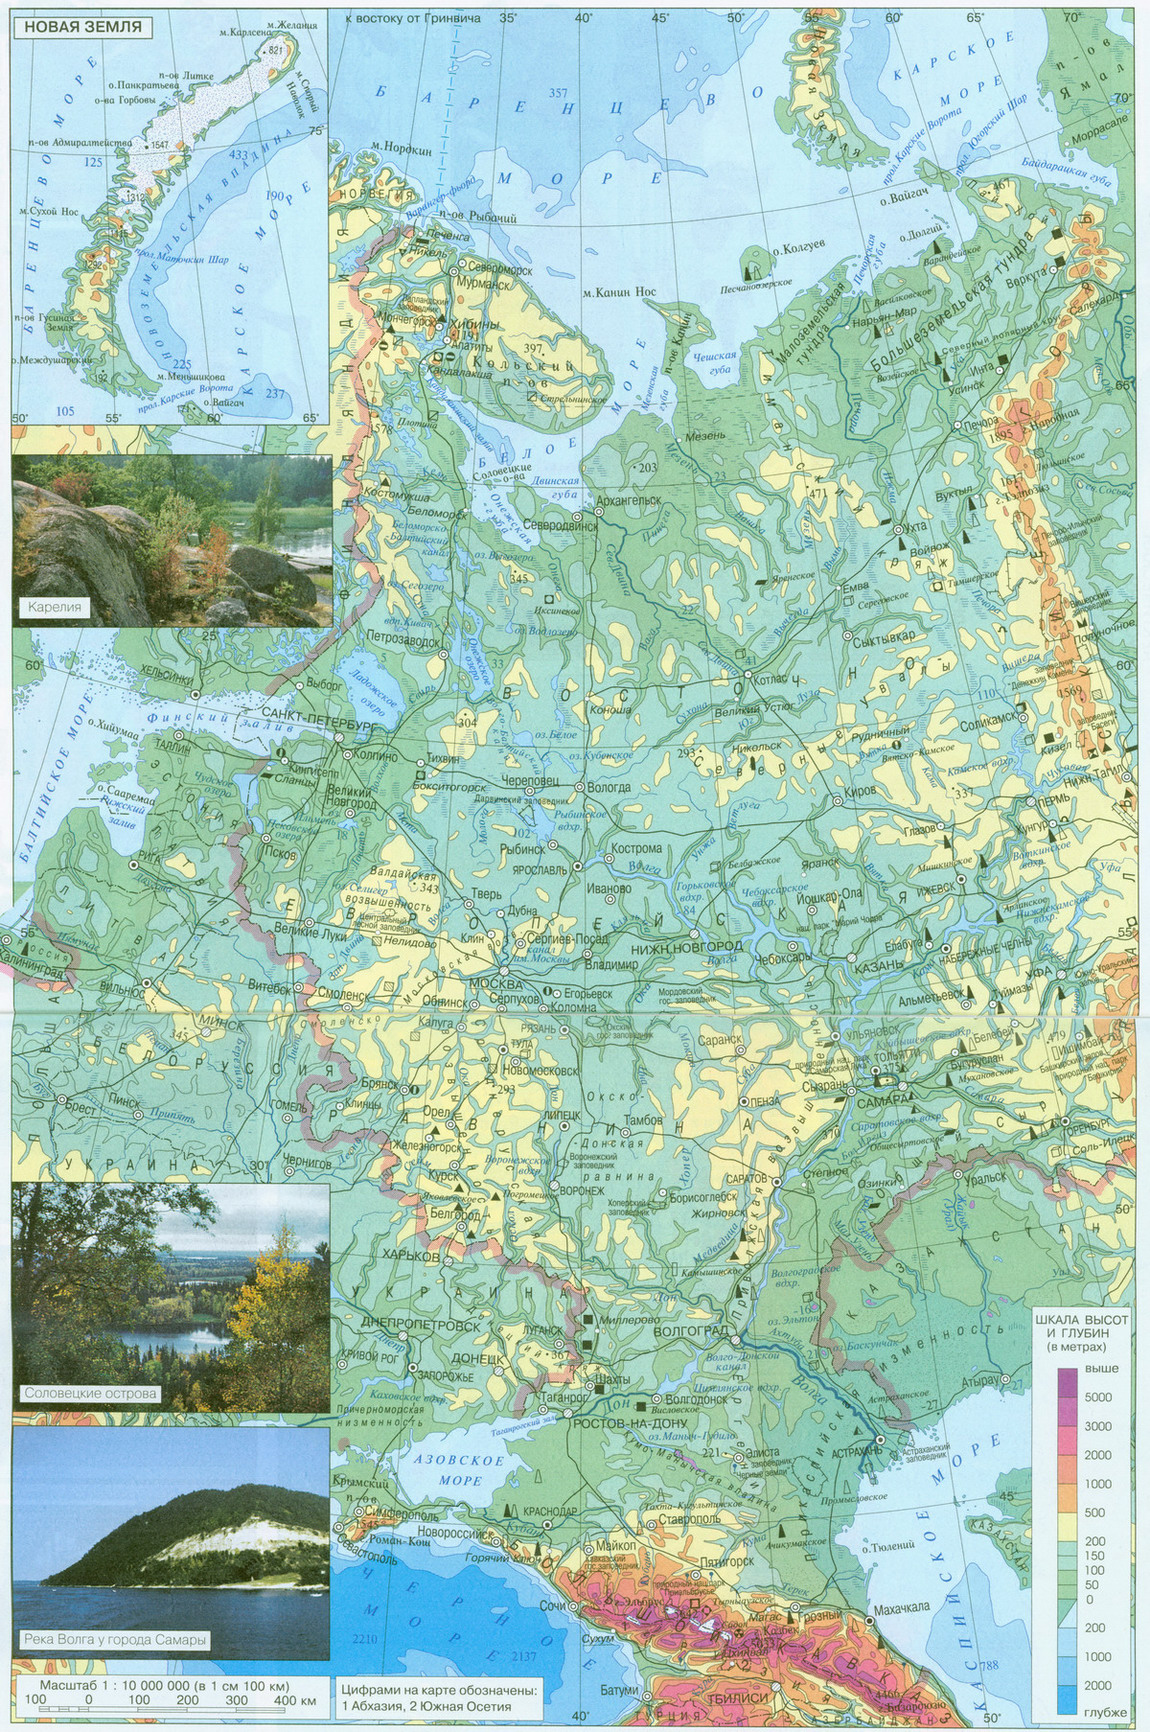 Карта россии объекты всемирного природного наследия охраняемые территории 6 класс контурная карта